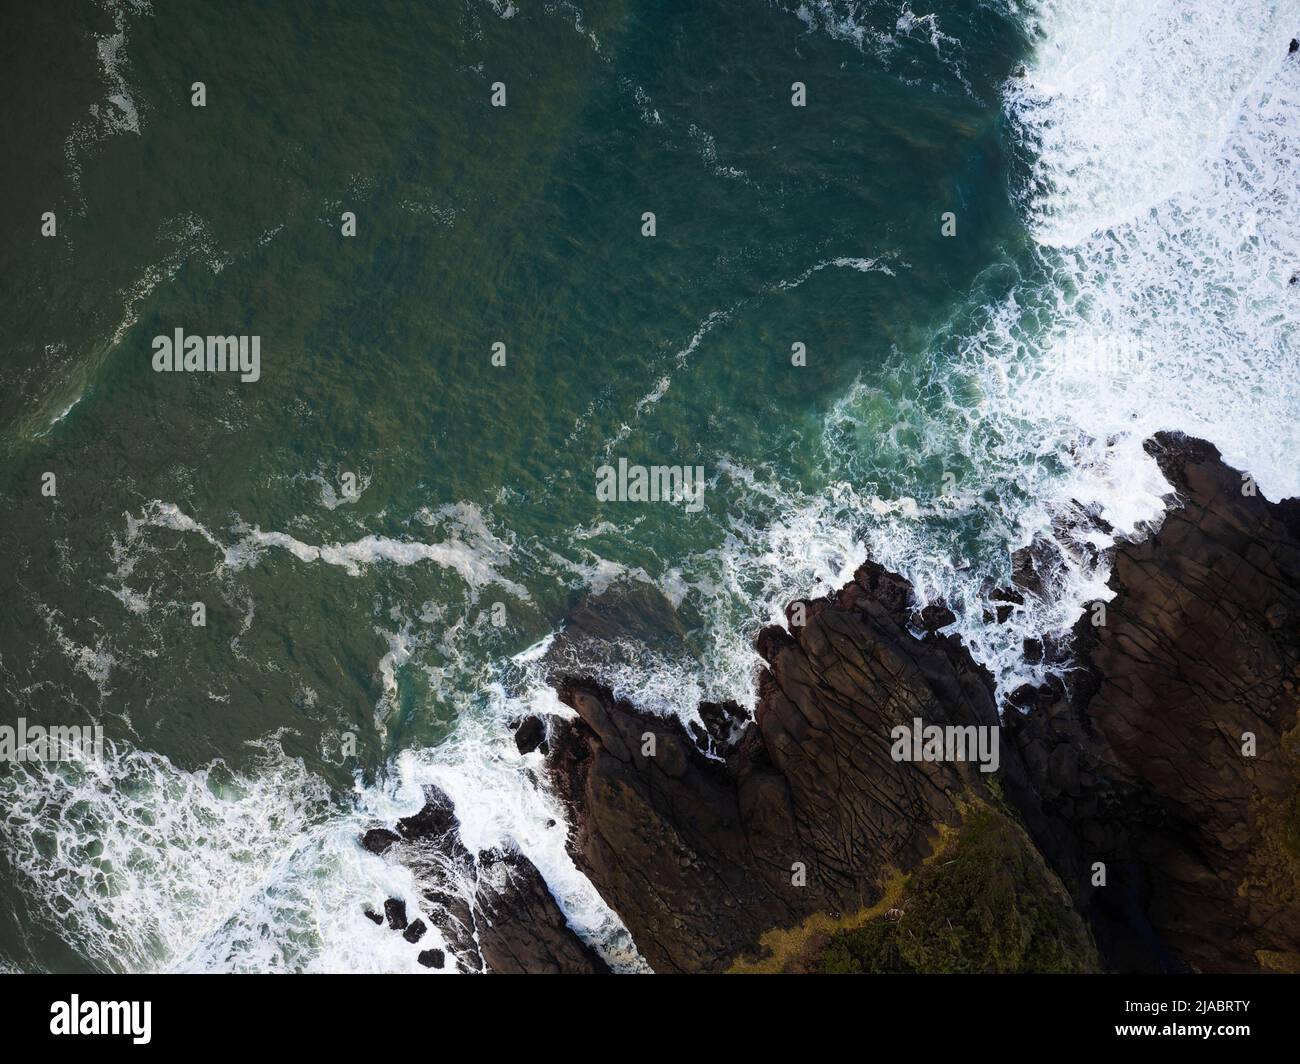 Tir à partir d'un drone. L'eau turquoise transparente de l'océan avec des vagues de lumière bat contre la côte rocheuse. Magnifique paysage marin. Vacances, voyages, Banque D'Images